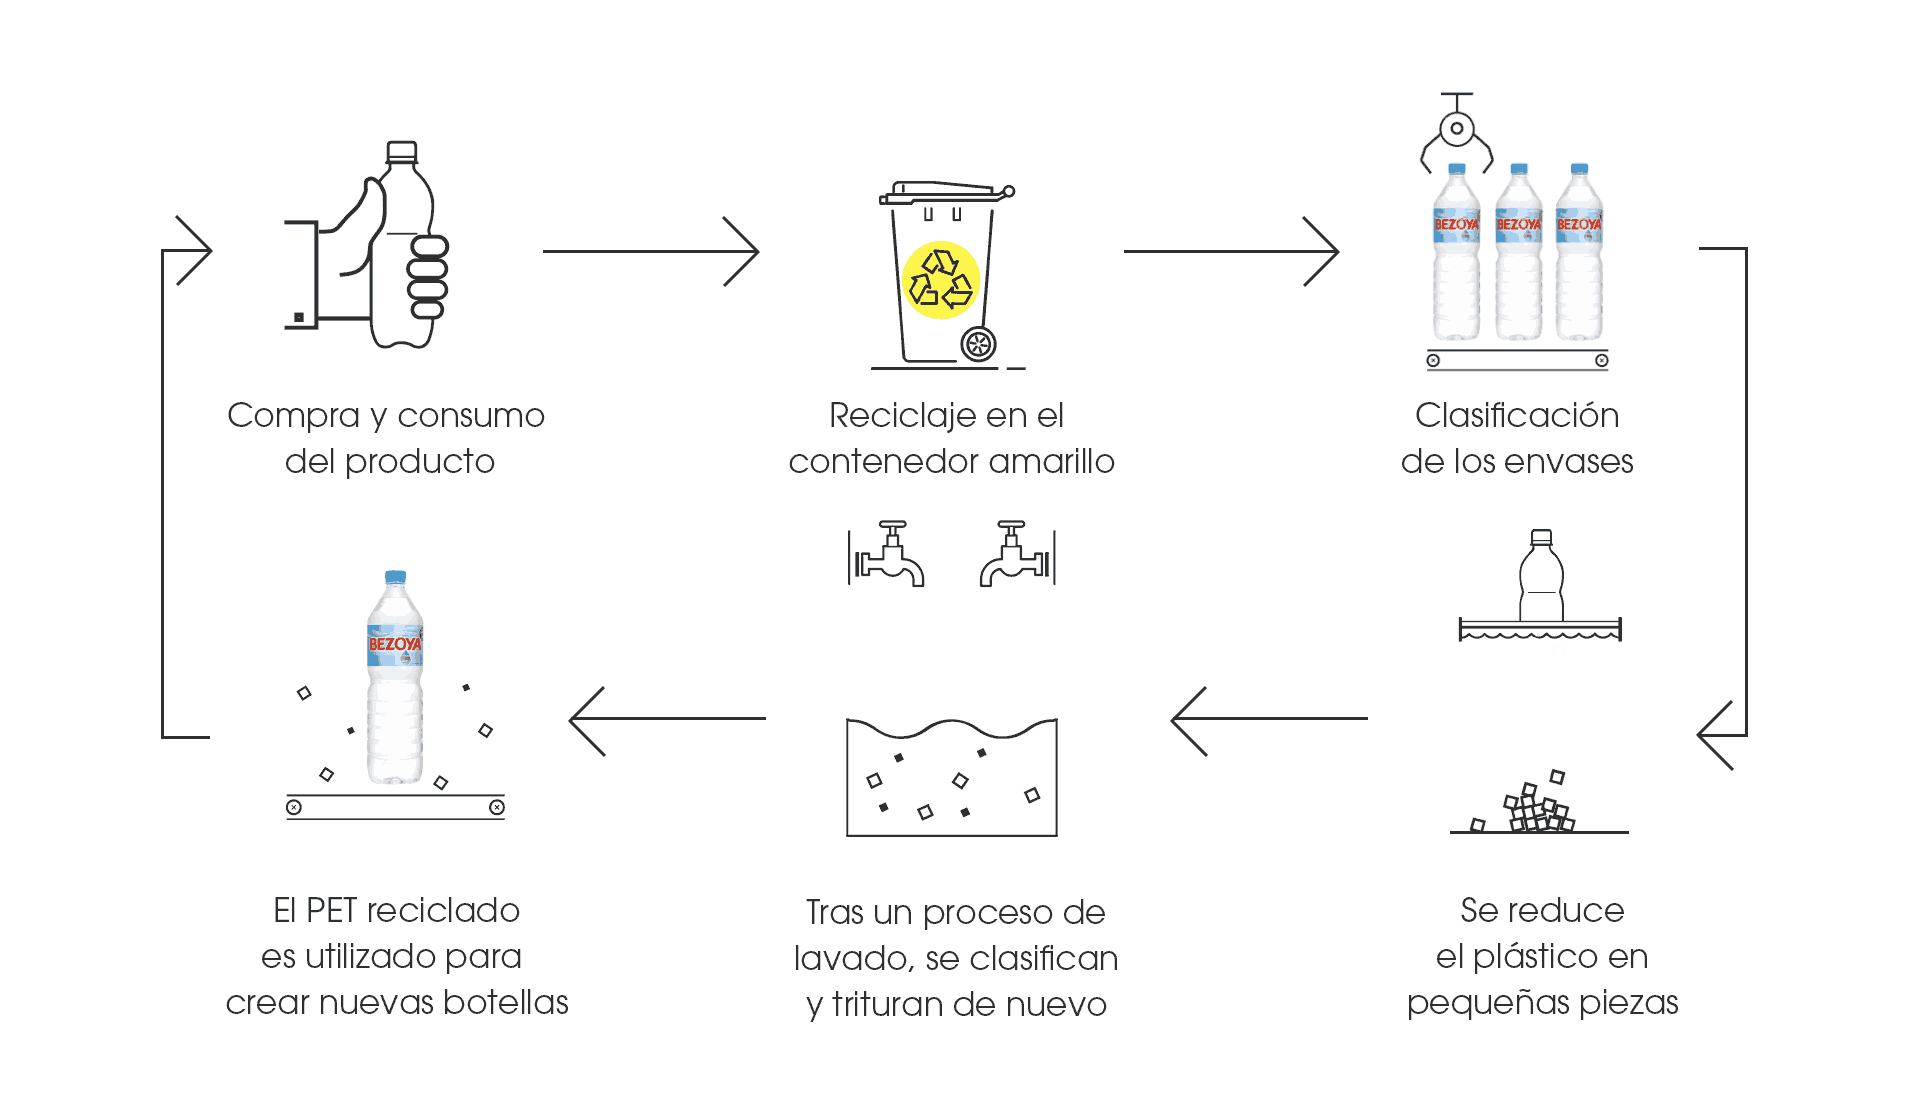 Bezoya (Pascual) alcanza el 100 % en plástico reciclado y será neutral en  carbono durante el 2022 - EFEAgro Bezoya (Pascual) alcanza el 100 % en  plástico reciclado y será neutral en carbono en 2022